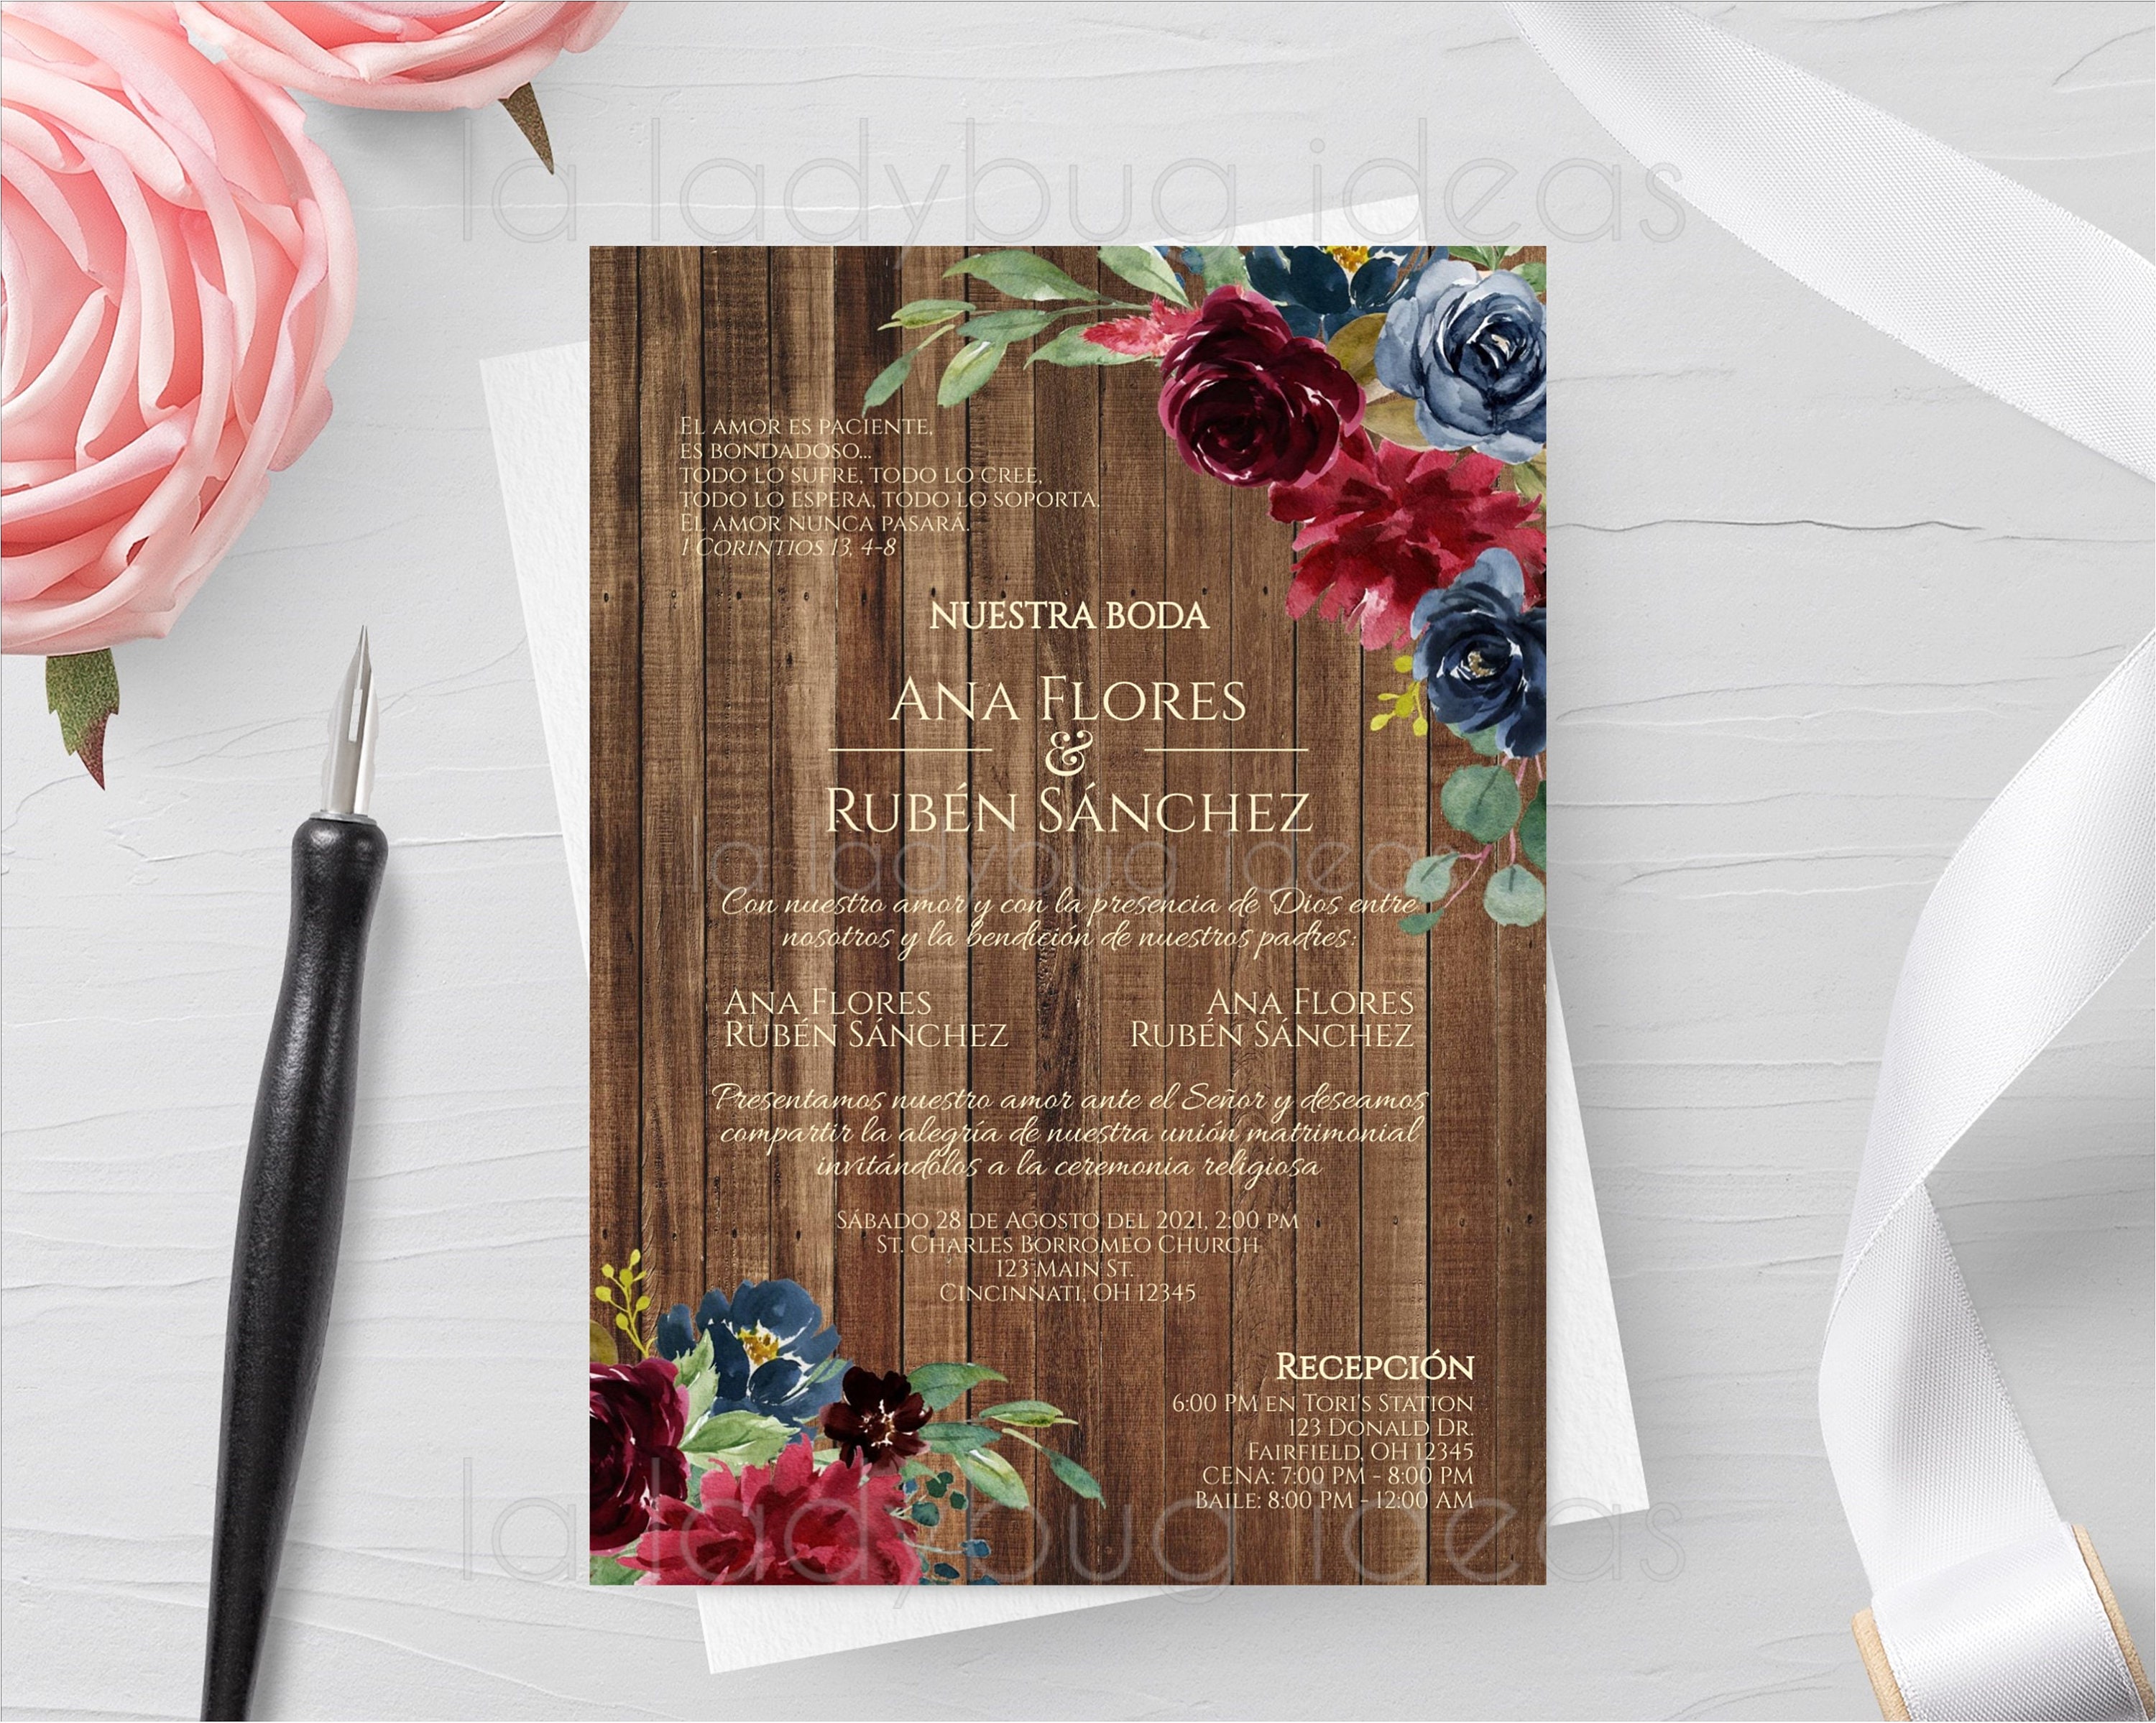 Invitacion Boda Para Editar/imprimir Color Tinto. Invitaciones De Boda Flor  Marsala Español. Digital. Printable Wedding Invitation Spanish 